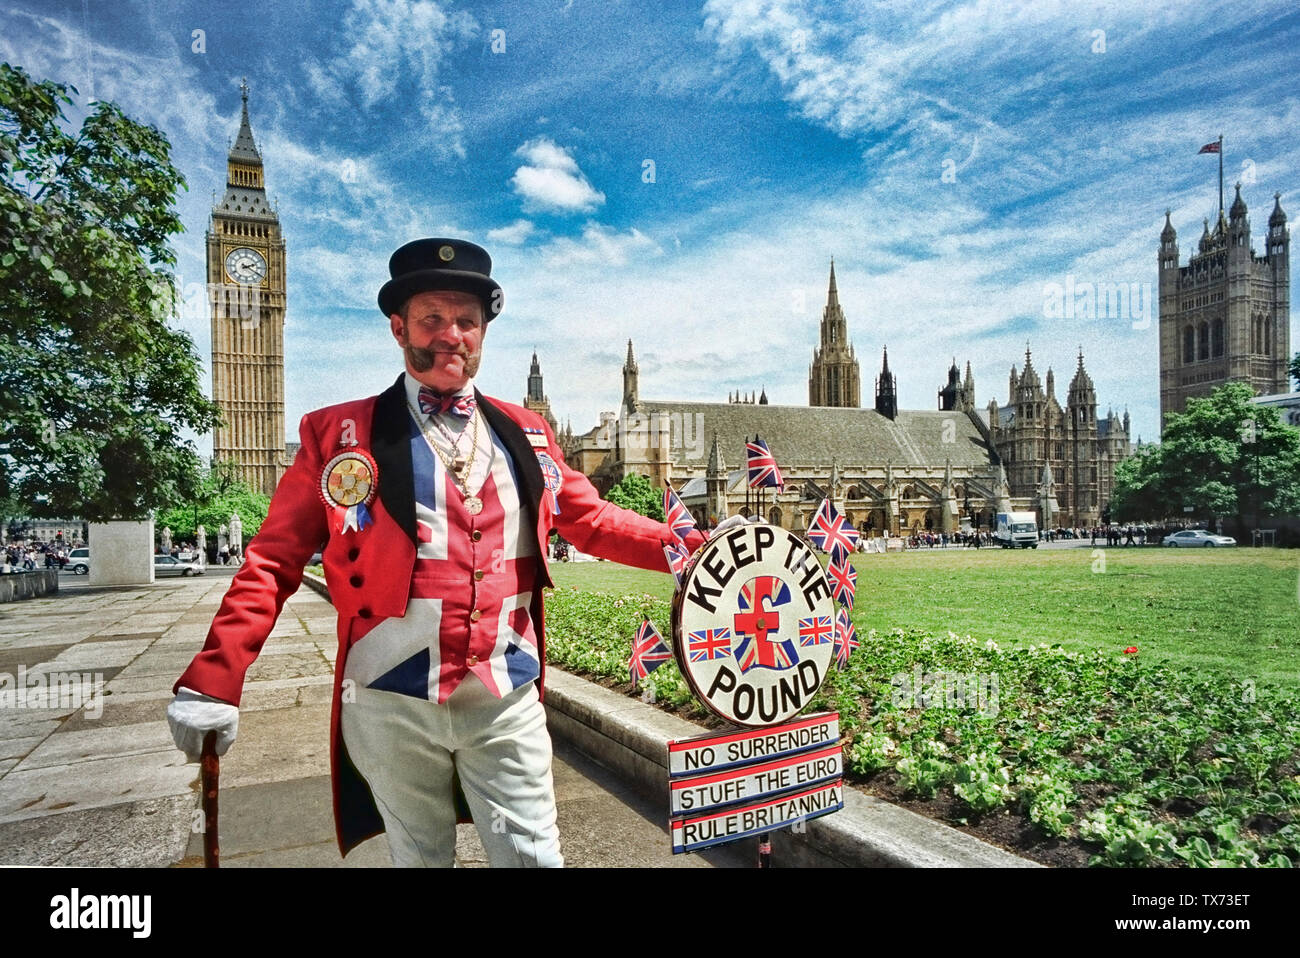 Mantener la libra la representante de la coalición, en la plaza del parlamento de Londres, Inglaterra Gran Bretaña UK Foto de stock